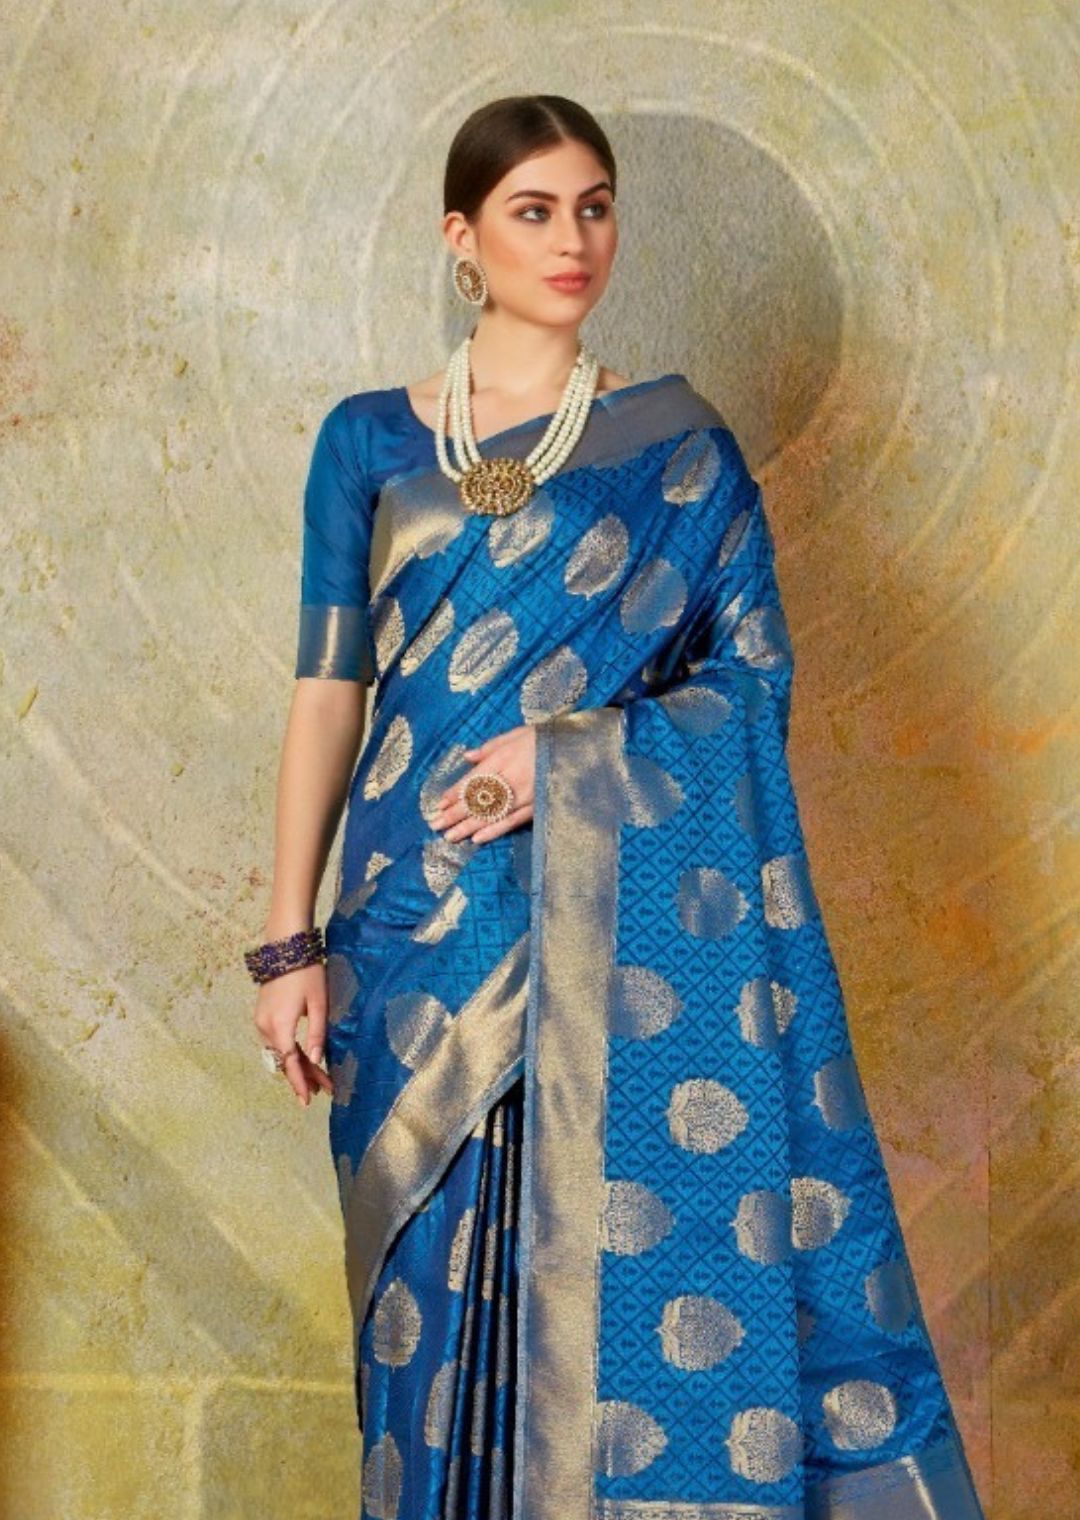 Royal Blue Woven Banarasi Silk Saree